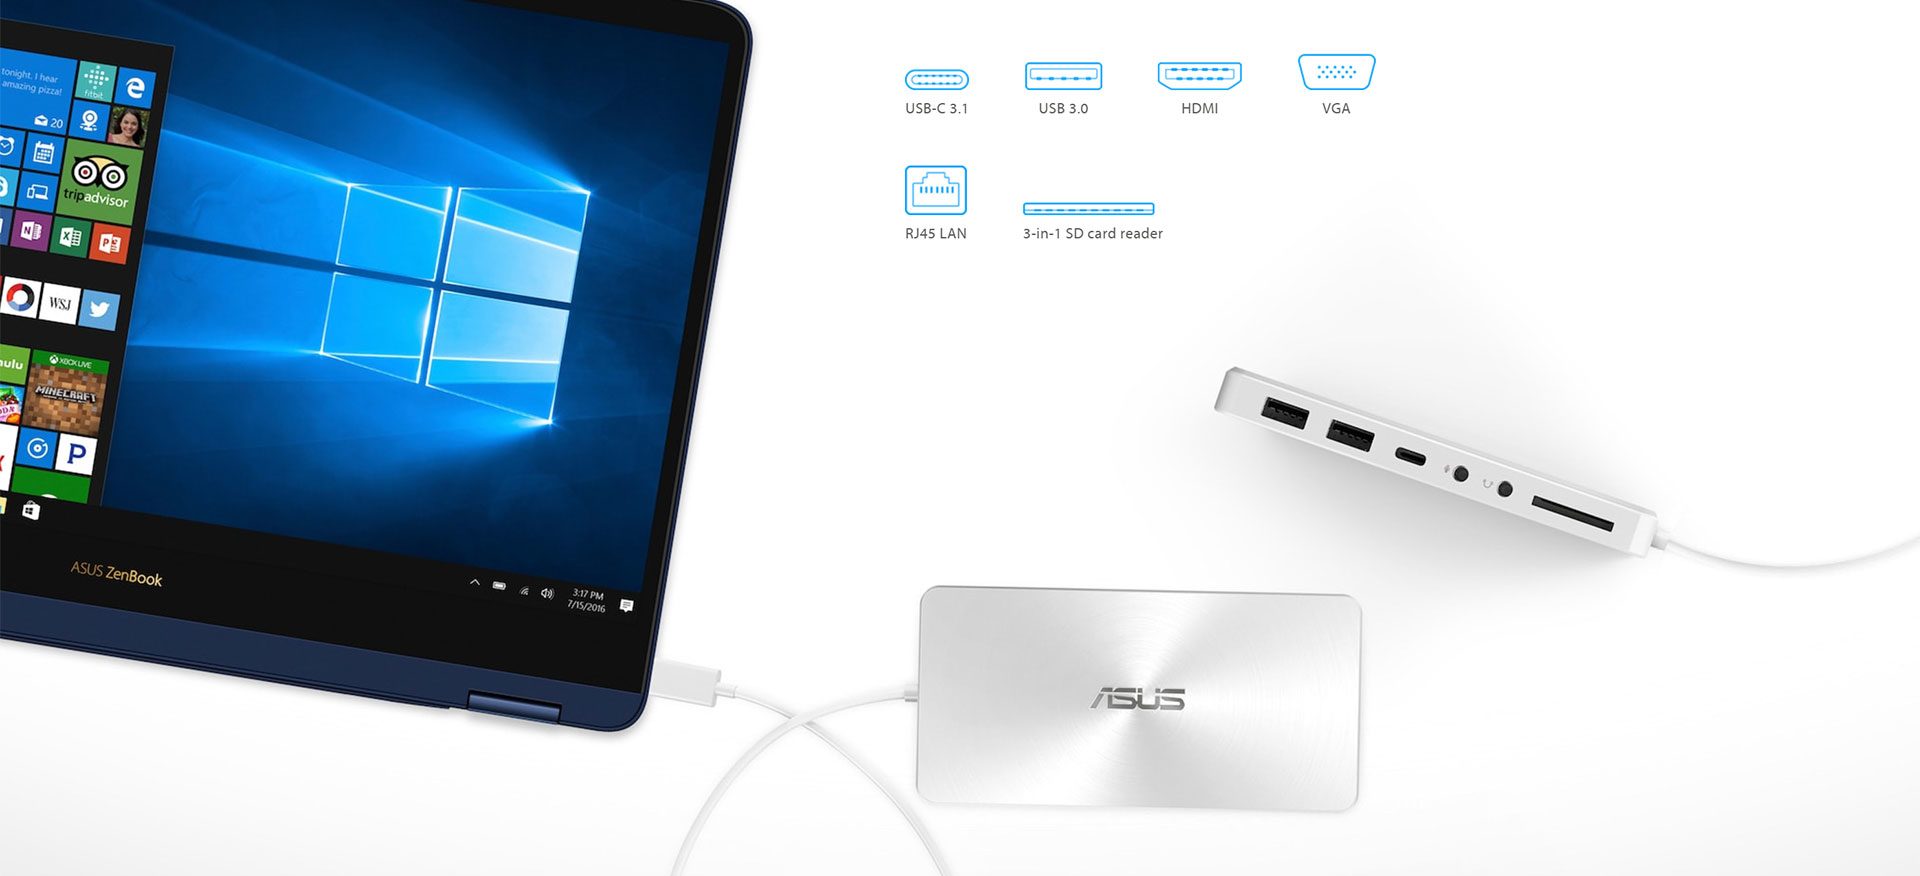 Asus ZenBook Flip S UX370UA review - the vanity 2-in-1 laptop